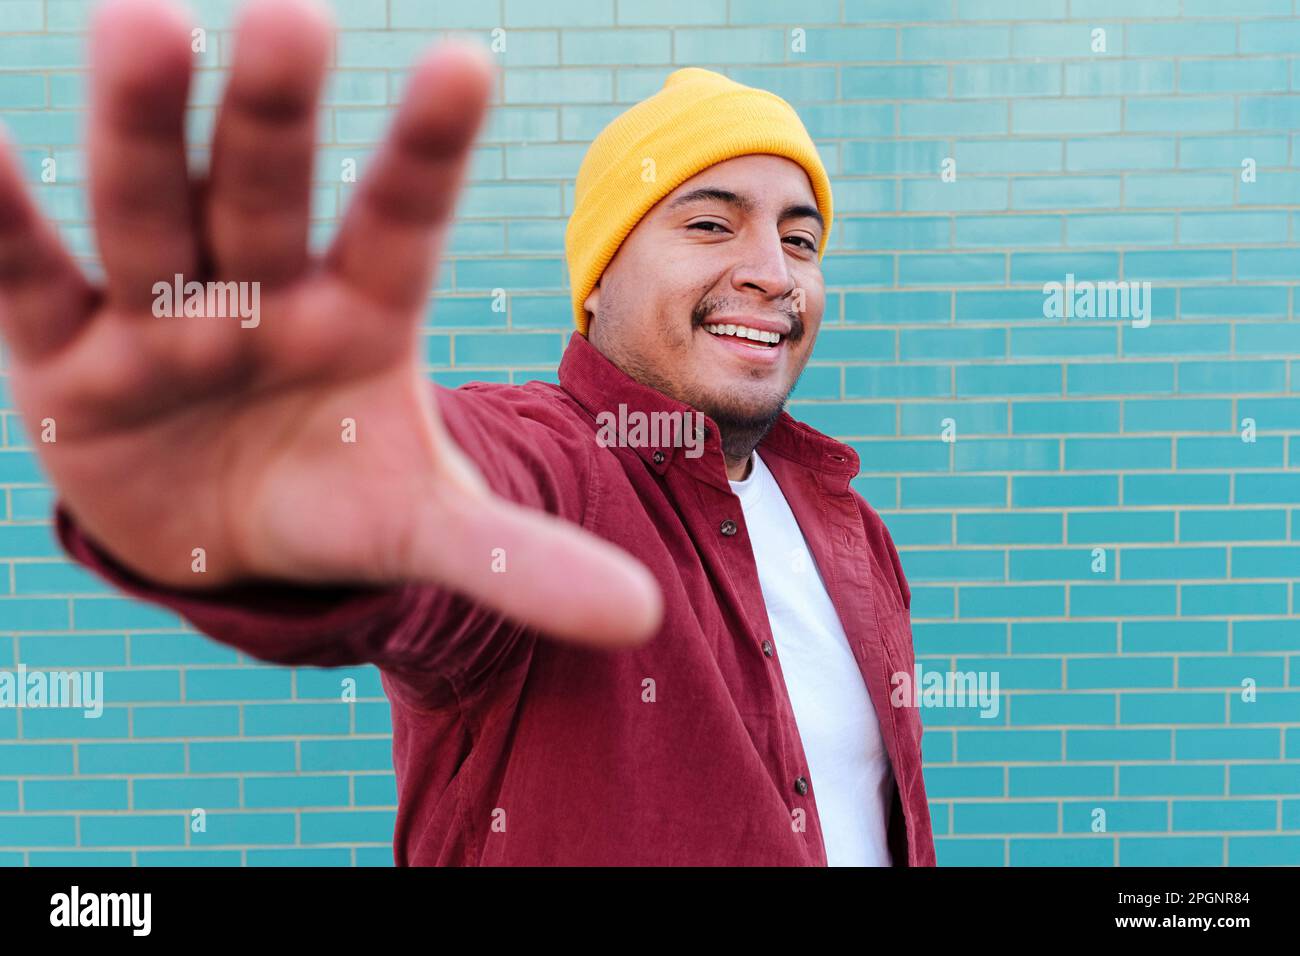 Ein glücklicher Mann hört auf, vor einer türkisfarbenen Ziegelwand zu Gesten Stockfoto